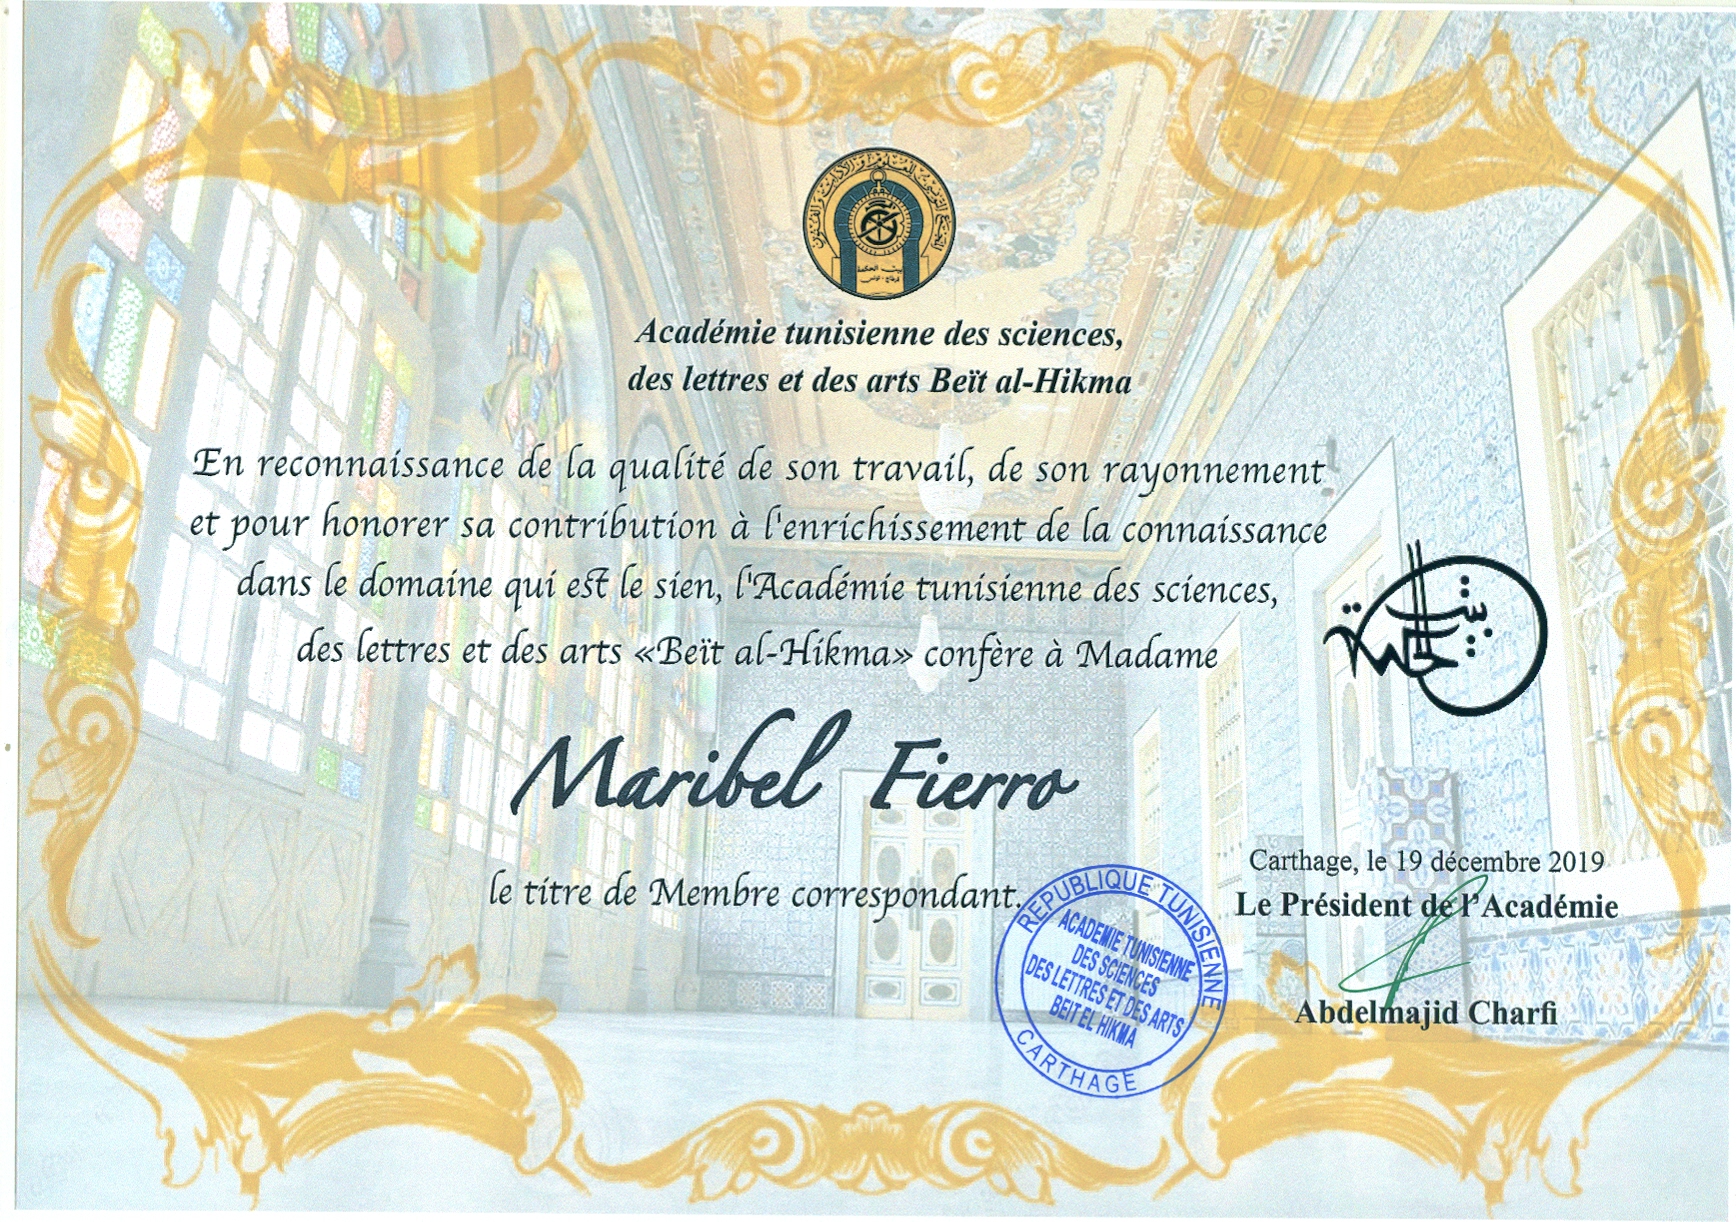 Maribel Fierro ha sido nombrada miembro correspondiente de la  Académie tunisienne, des sciences, des lettres et des arts Beït al-Hikma